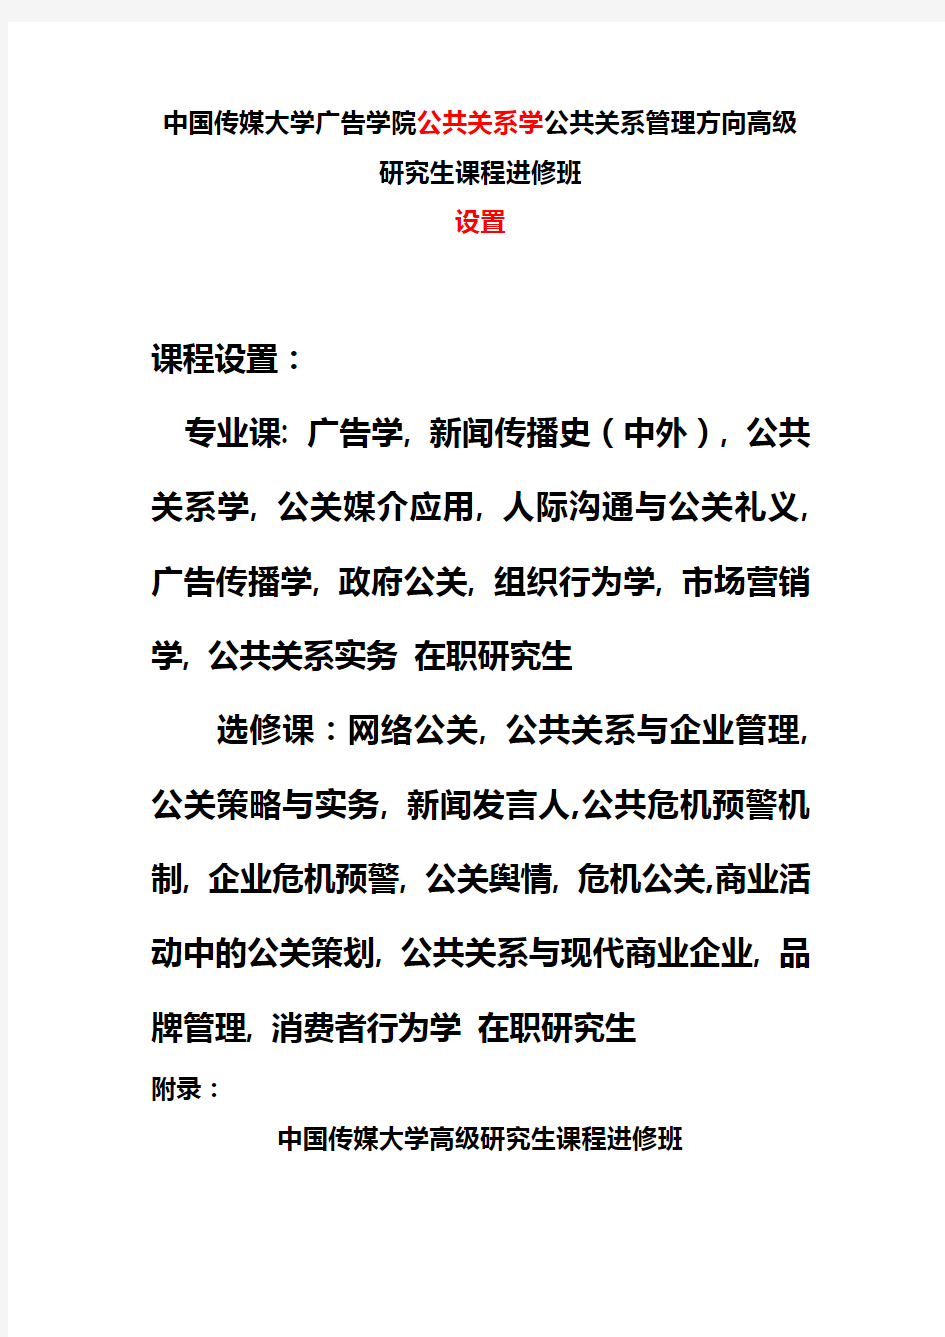 中国传媒大学广告学院公共关系学公共关系管理方向高级研究生课程进修班设置